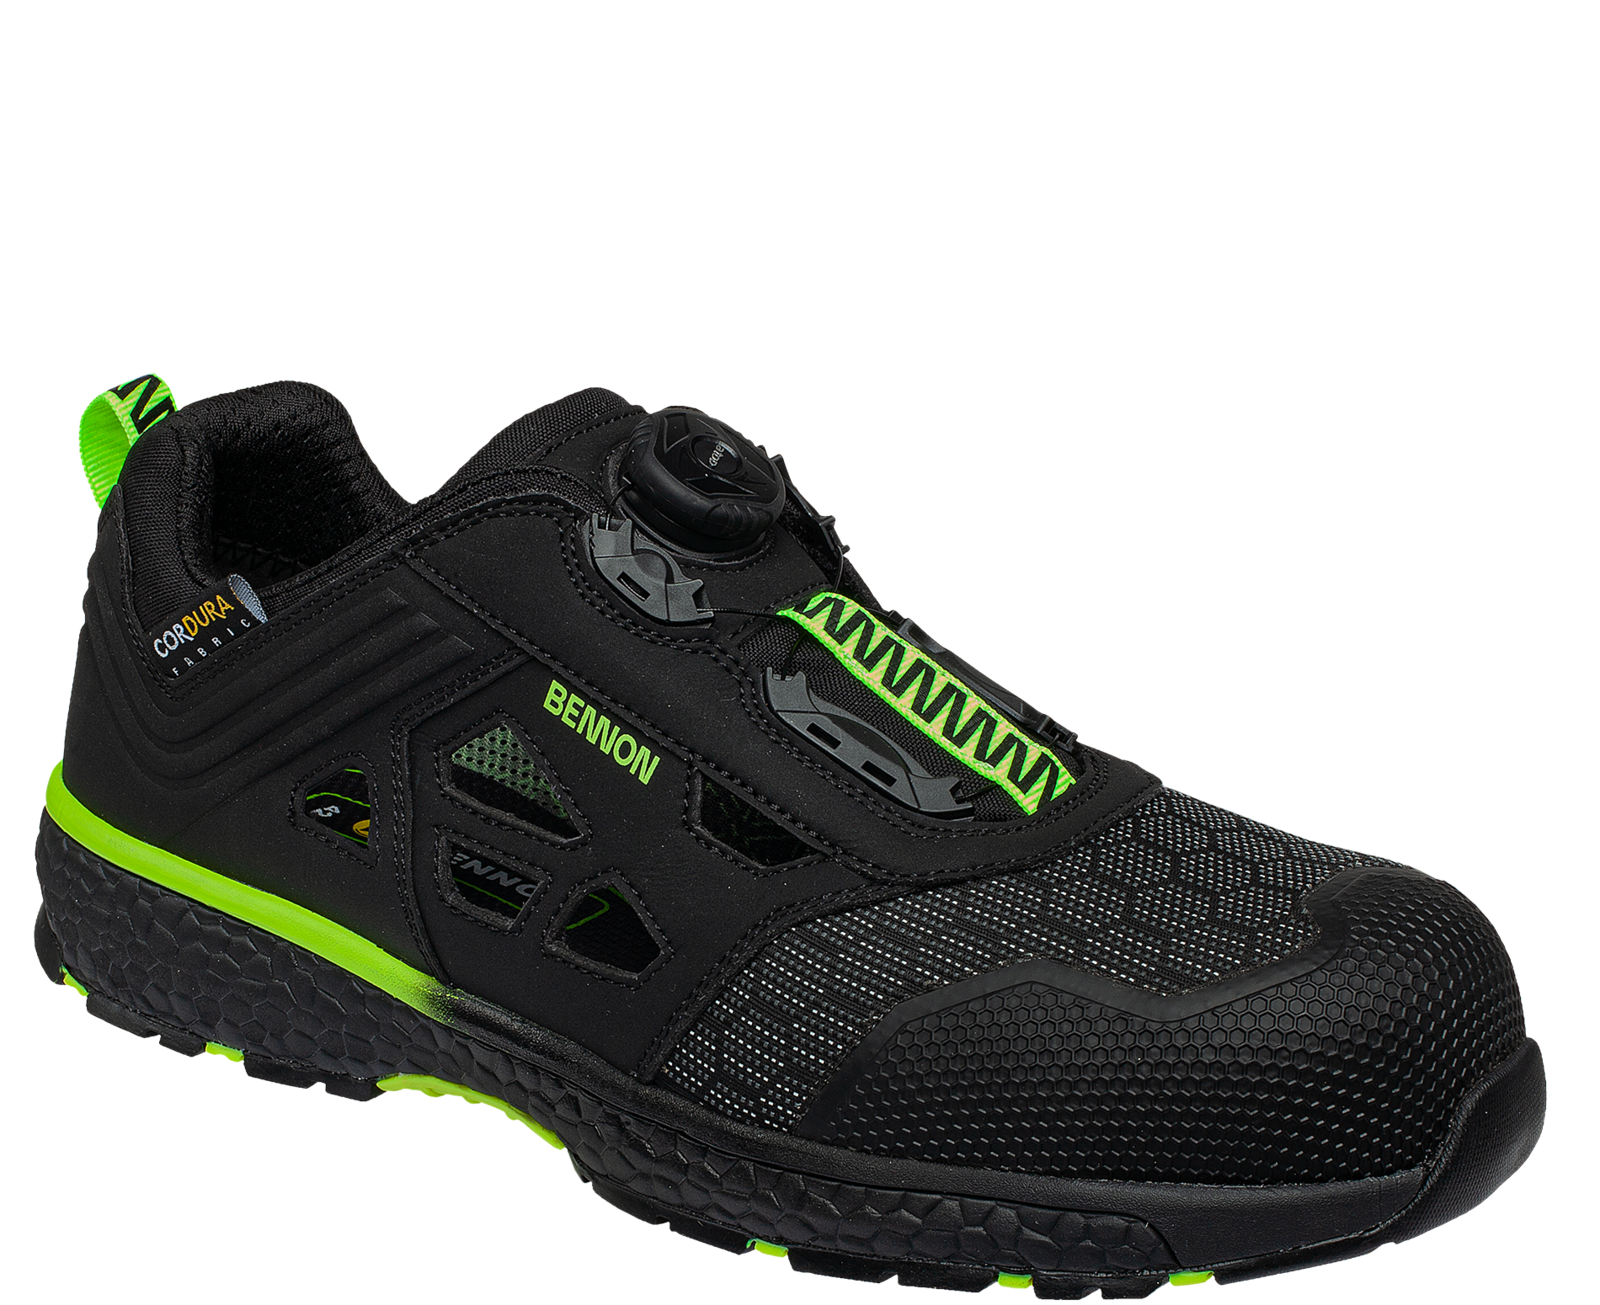 Bezpečnostné sandále Bennon Predator S1P ESD - veľkosť: 37, farba: čierna/zelená